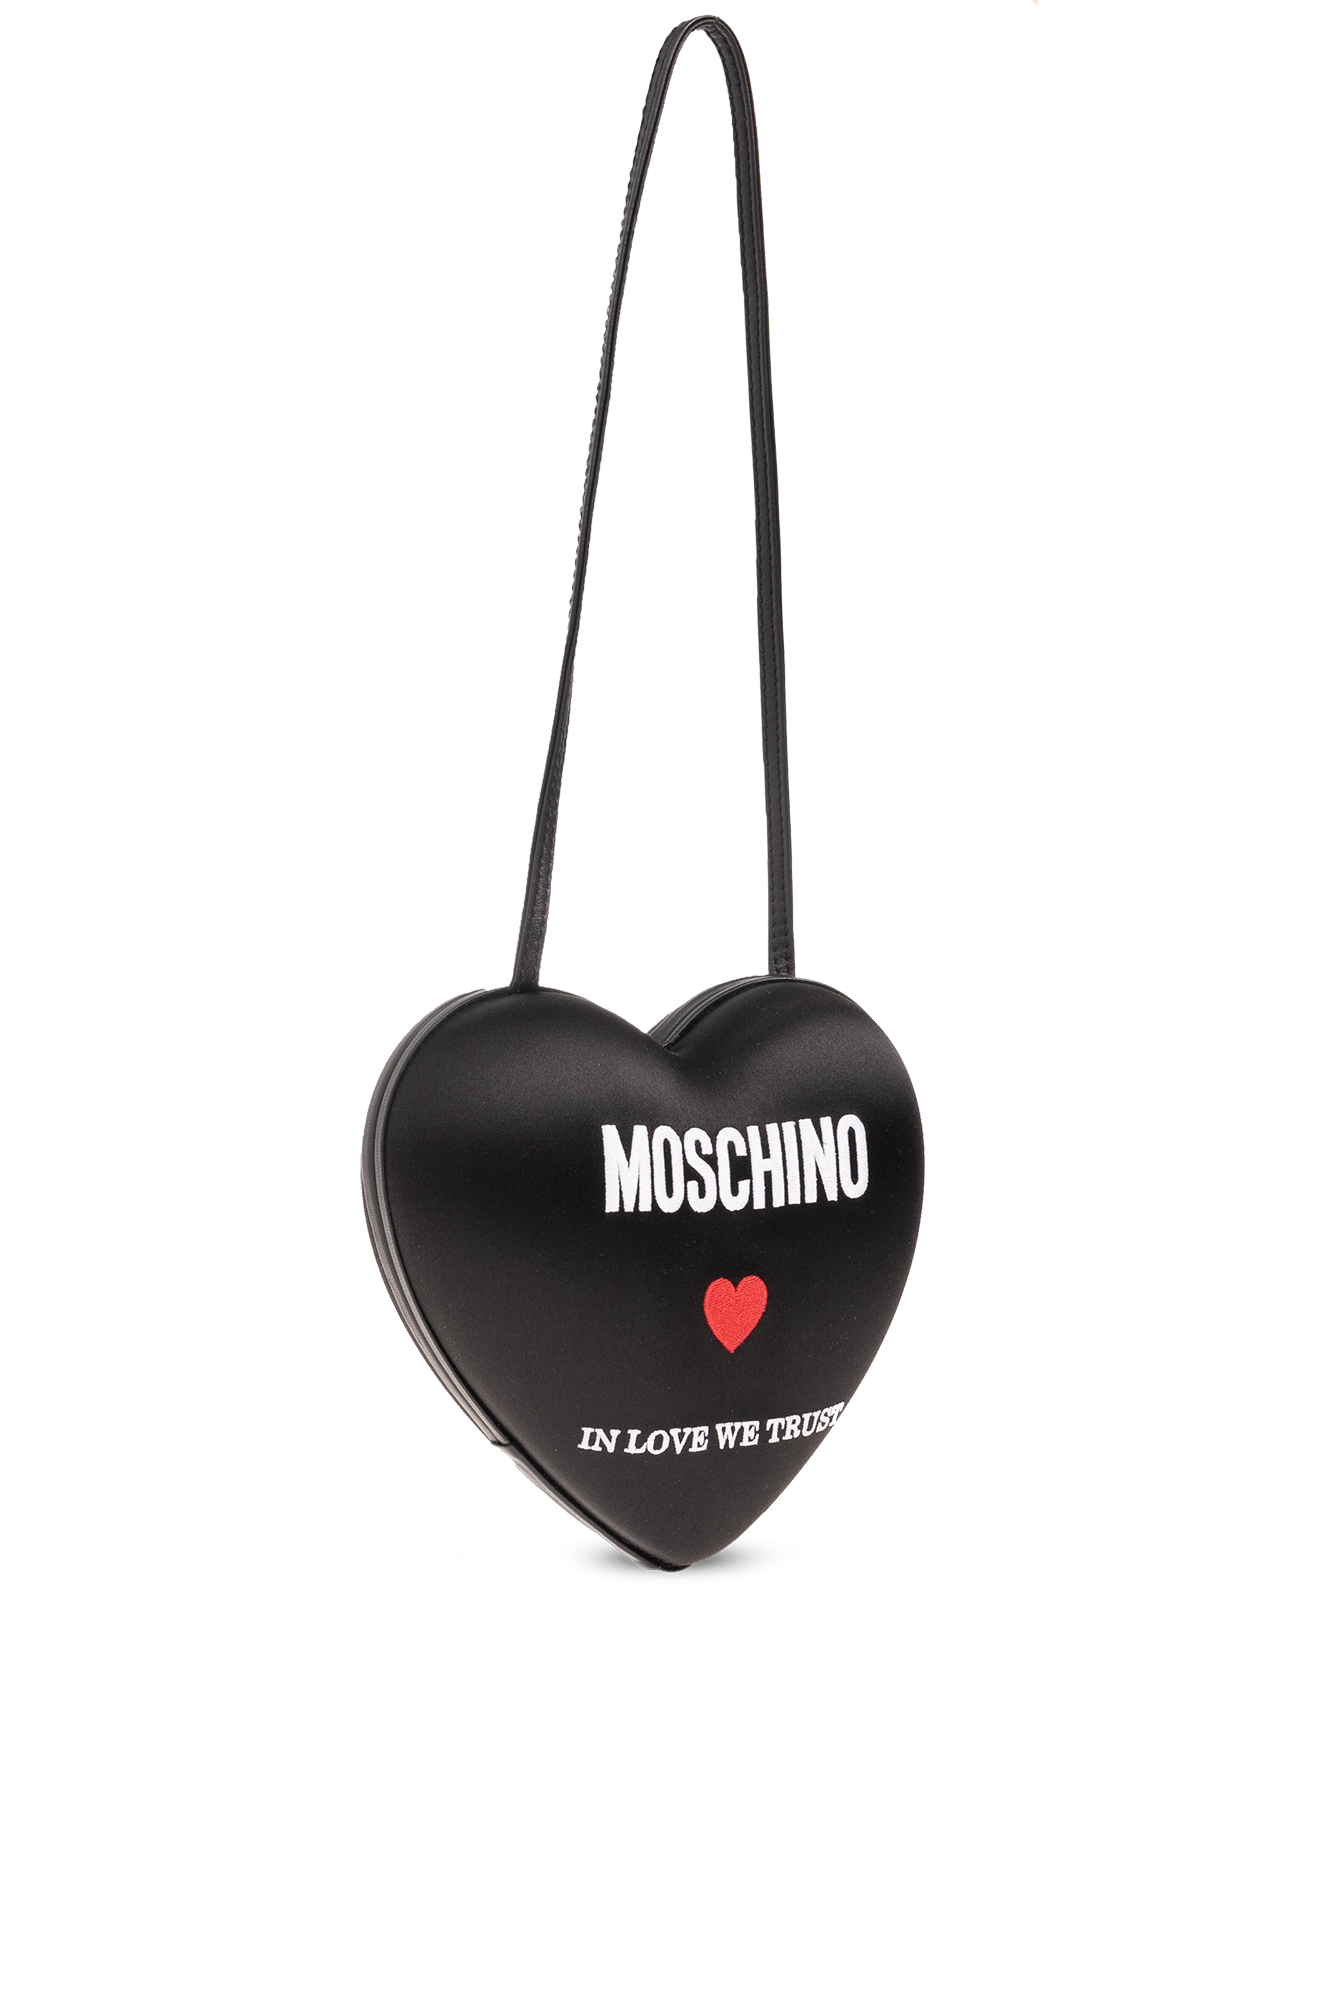 Moschino Heart-shaped shoulder bag, Women's Bags